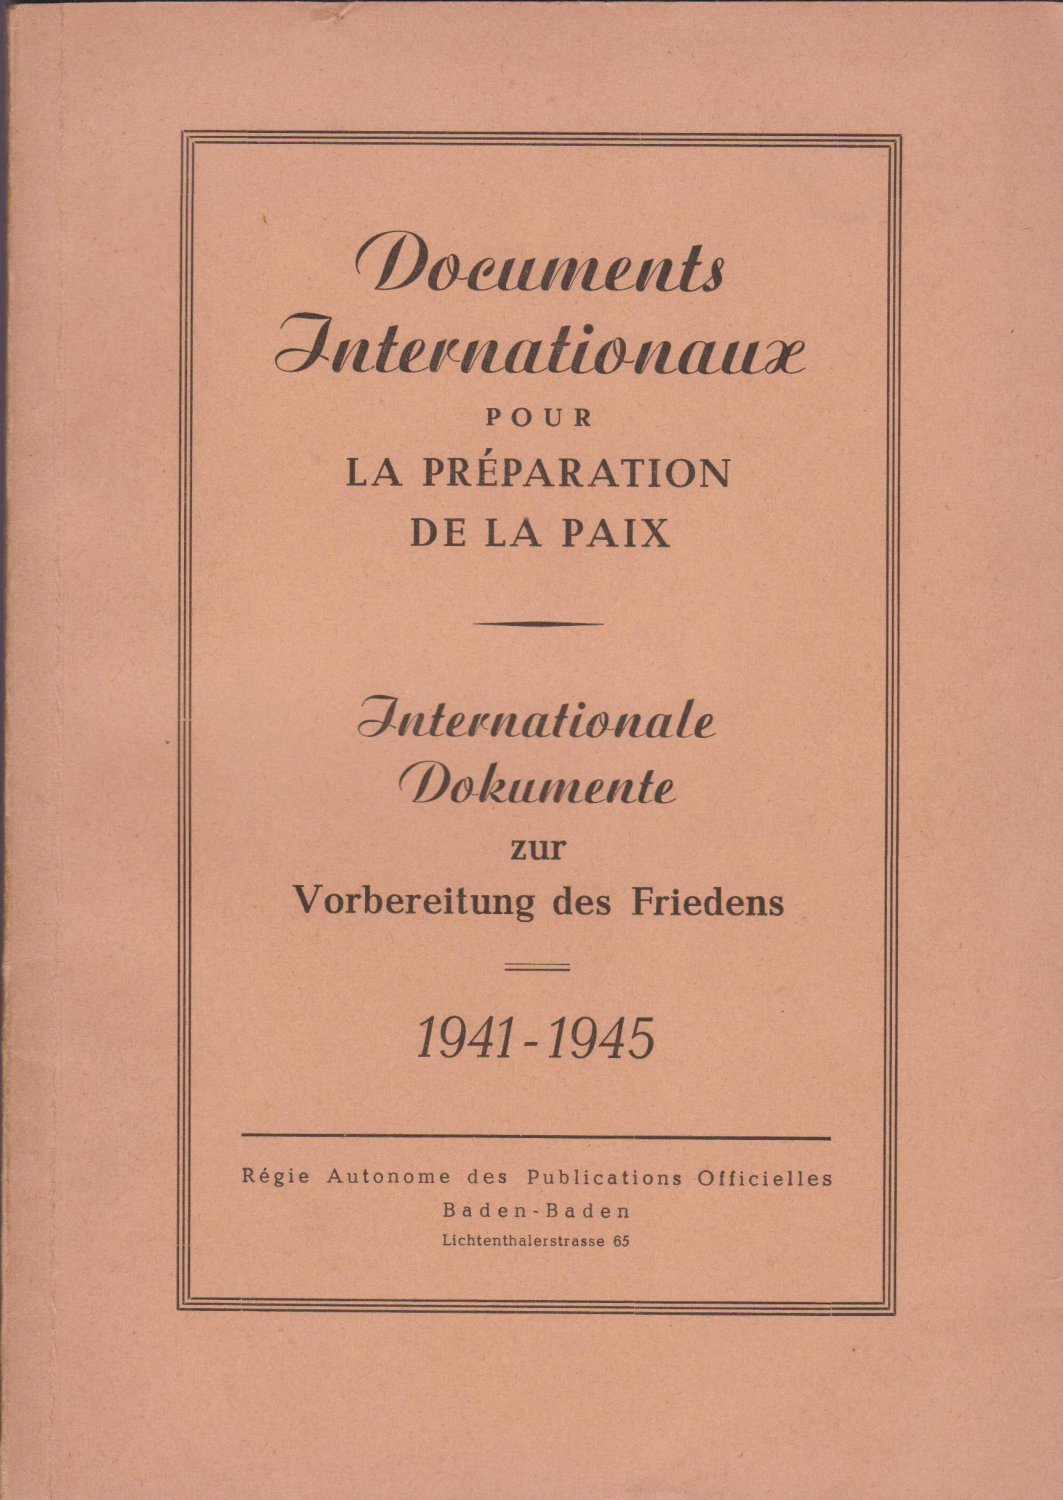 MARTIN, Marcel (ed.):  Documents Internationaux pour la Préparation de la Paix. Internationale Dokumente zur Vorbereitung des Friedens. 1941 - 1945. 